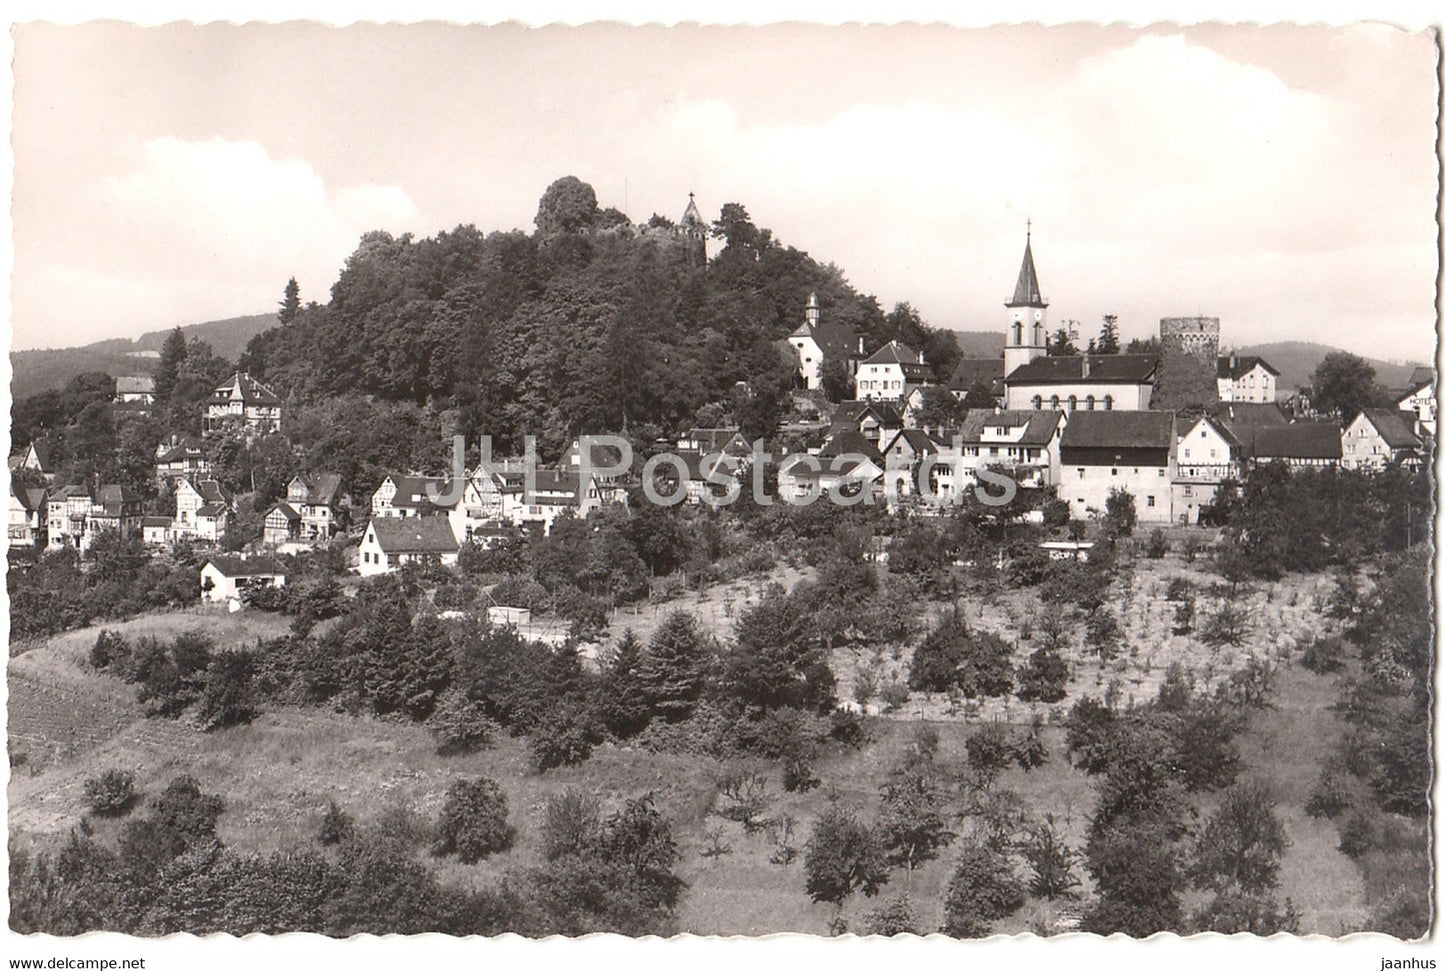 Hohenluftkurort Lindenfels - Die Perle des Odenwaldes - Germany - unused - JH Postcards